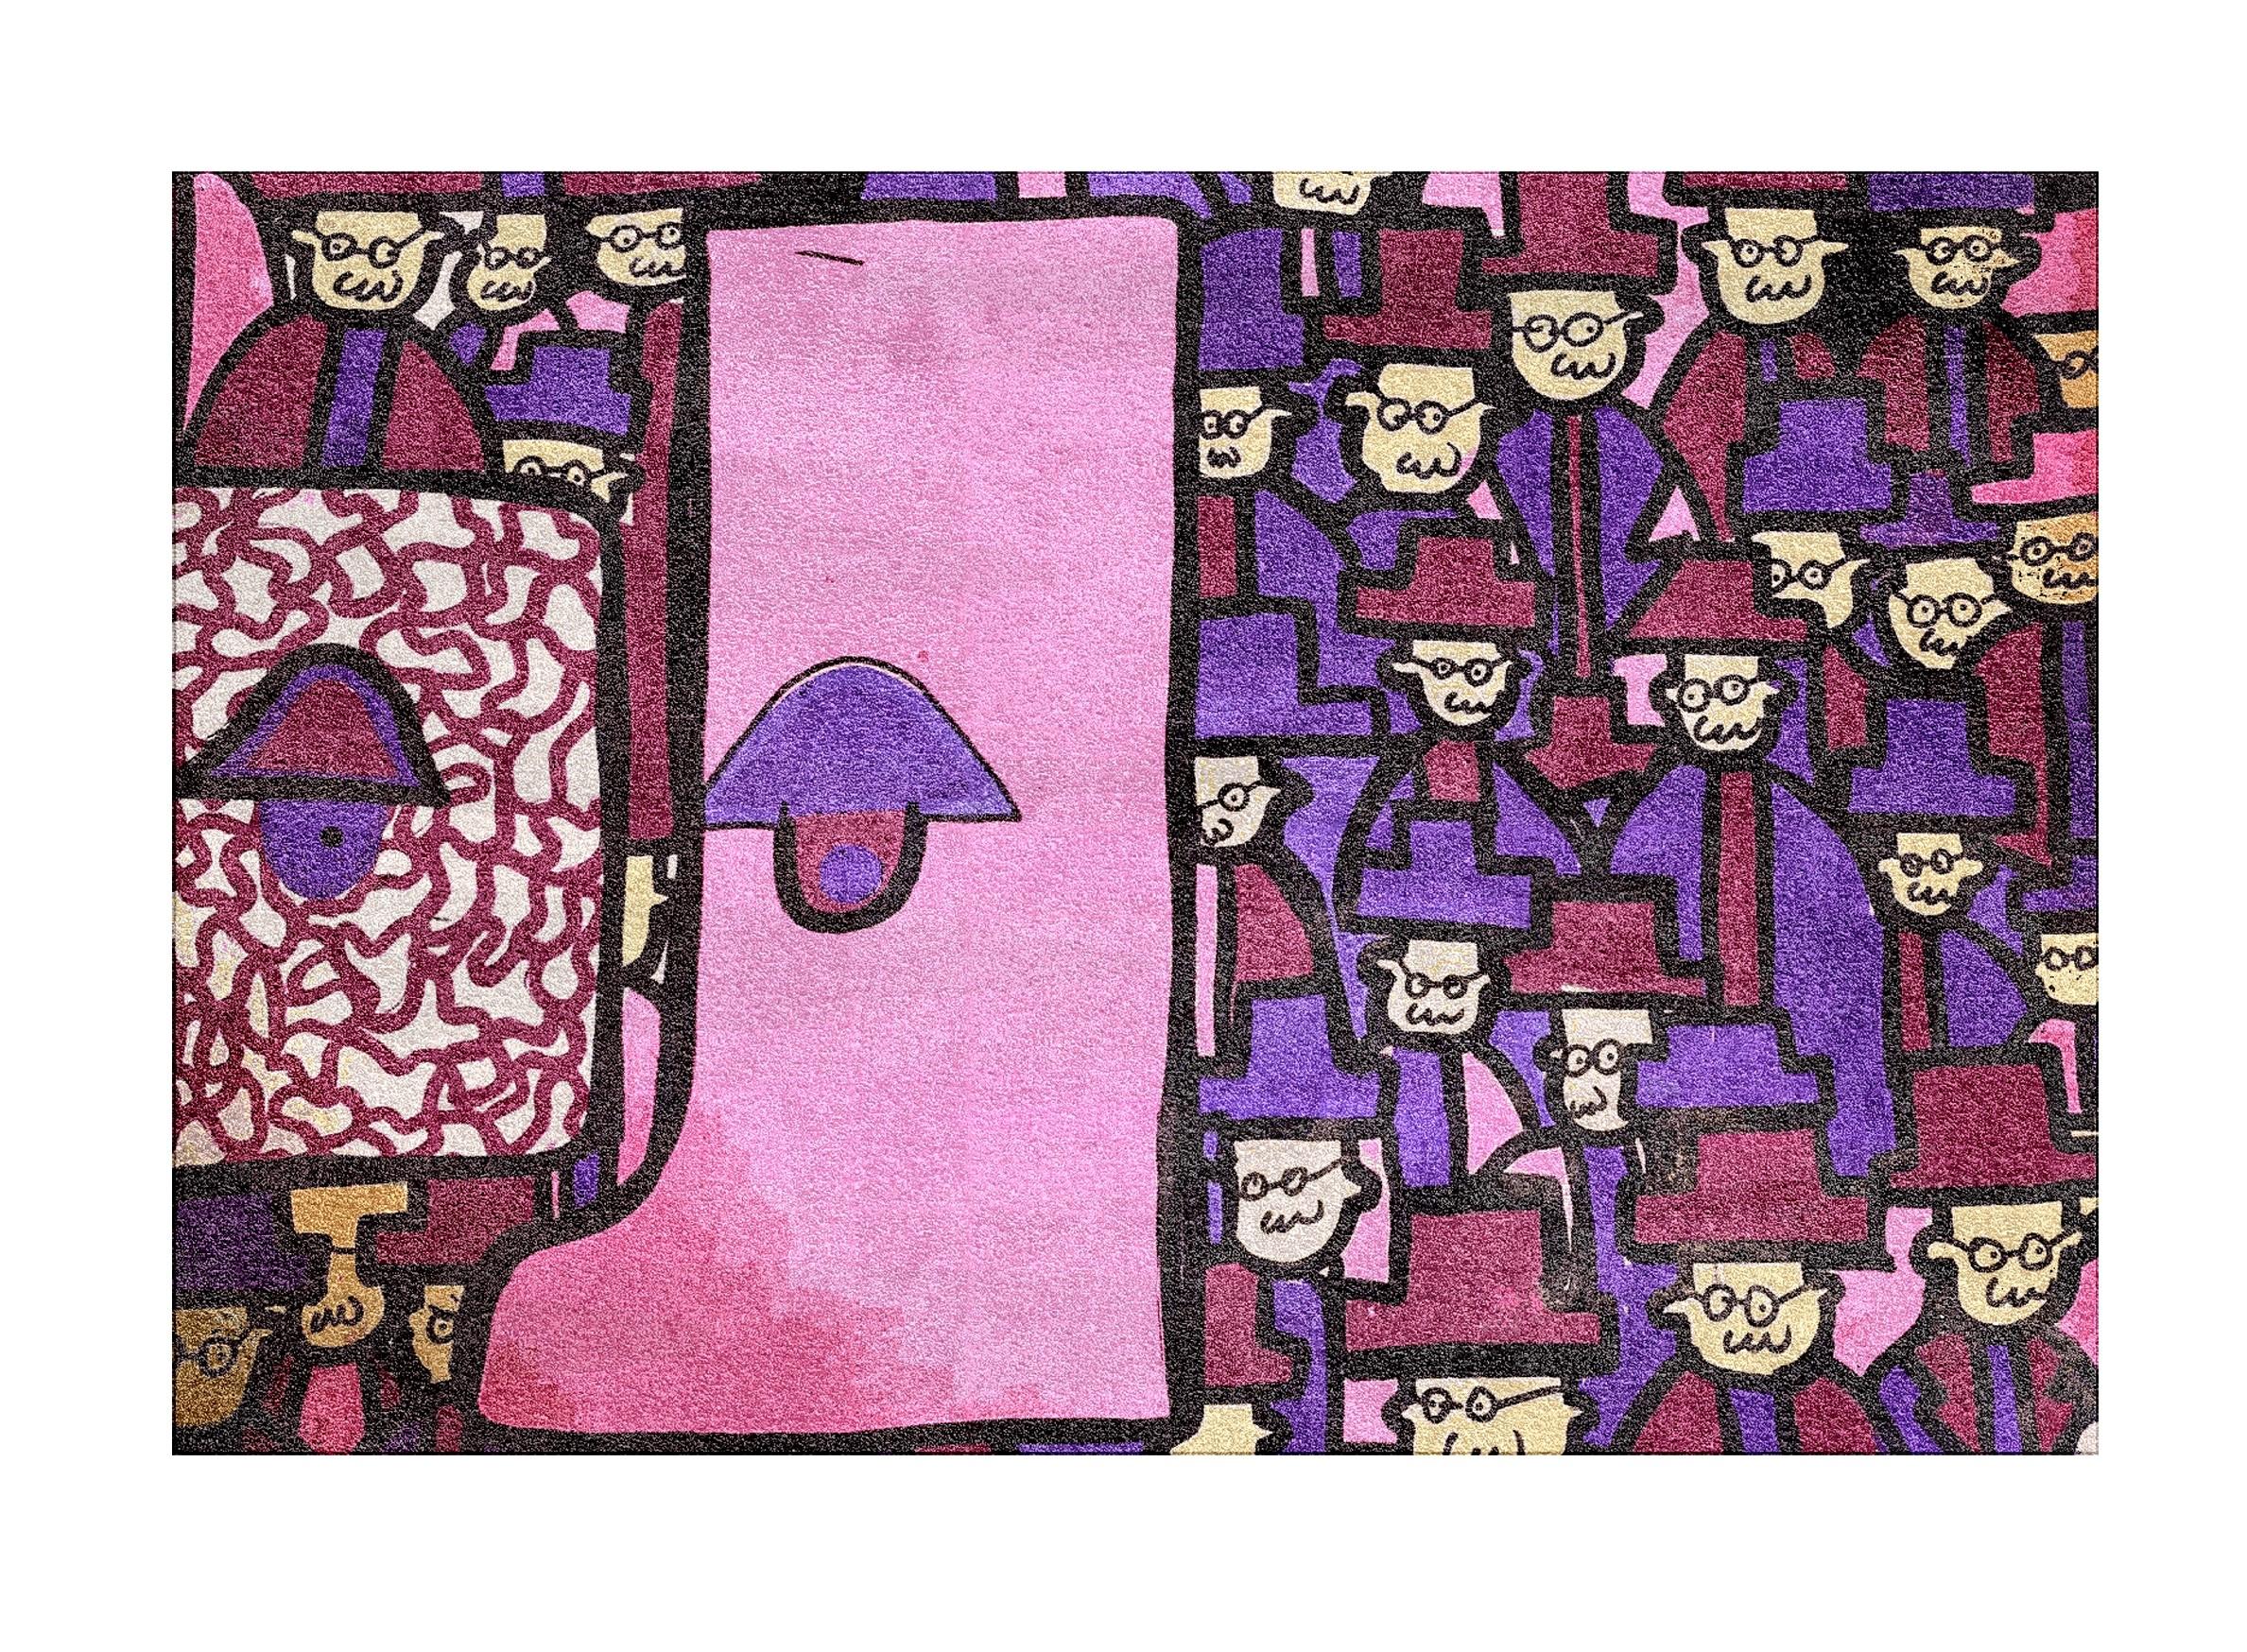 Rosa 1984-Teppich von Betta K.
Abmessungen: T 300 x B 200 cm
MATERIALIEN: Neuseeländische Wolle, Bambusseide
Erhältlich in anderen Farben.

Betta K. ist eine Multimediakünstlerin, die mit verschiedenen Techniken, Materialien und Farben